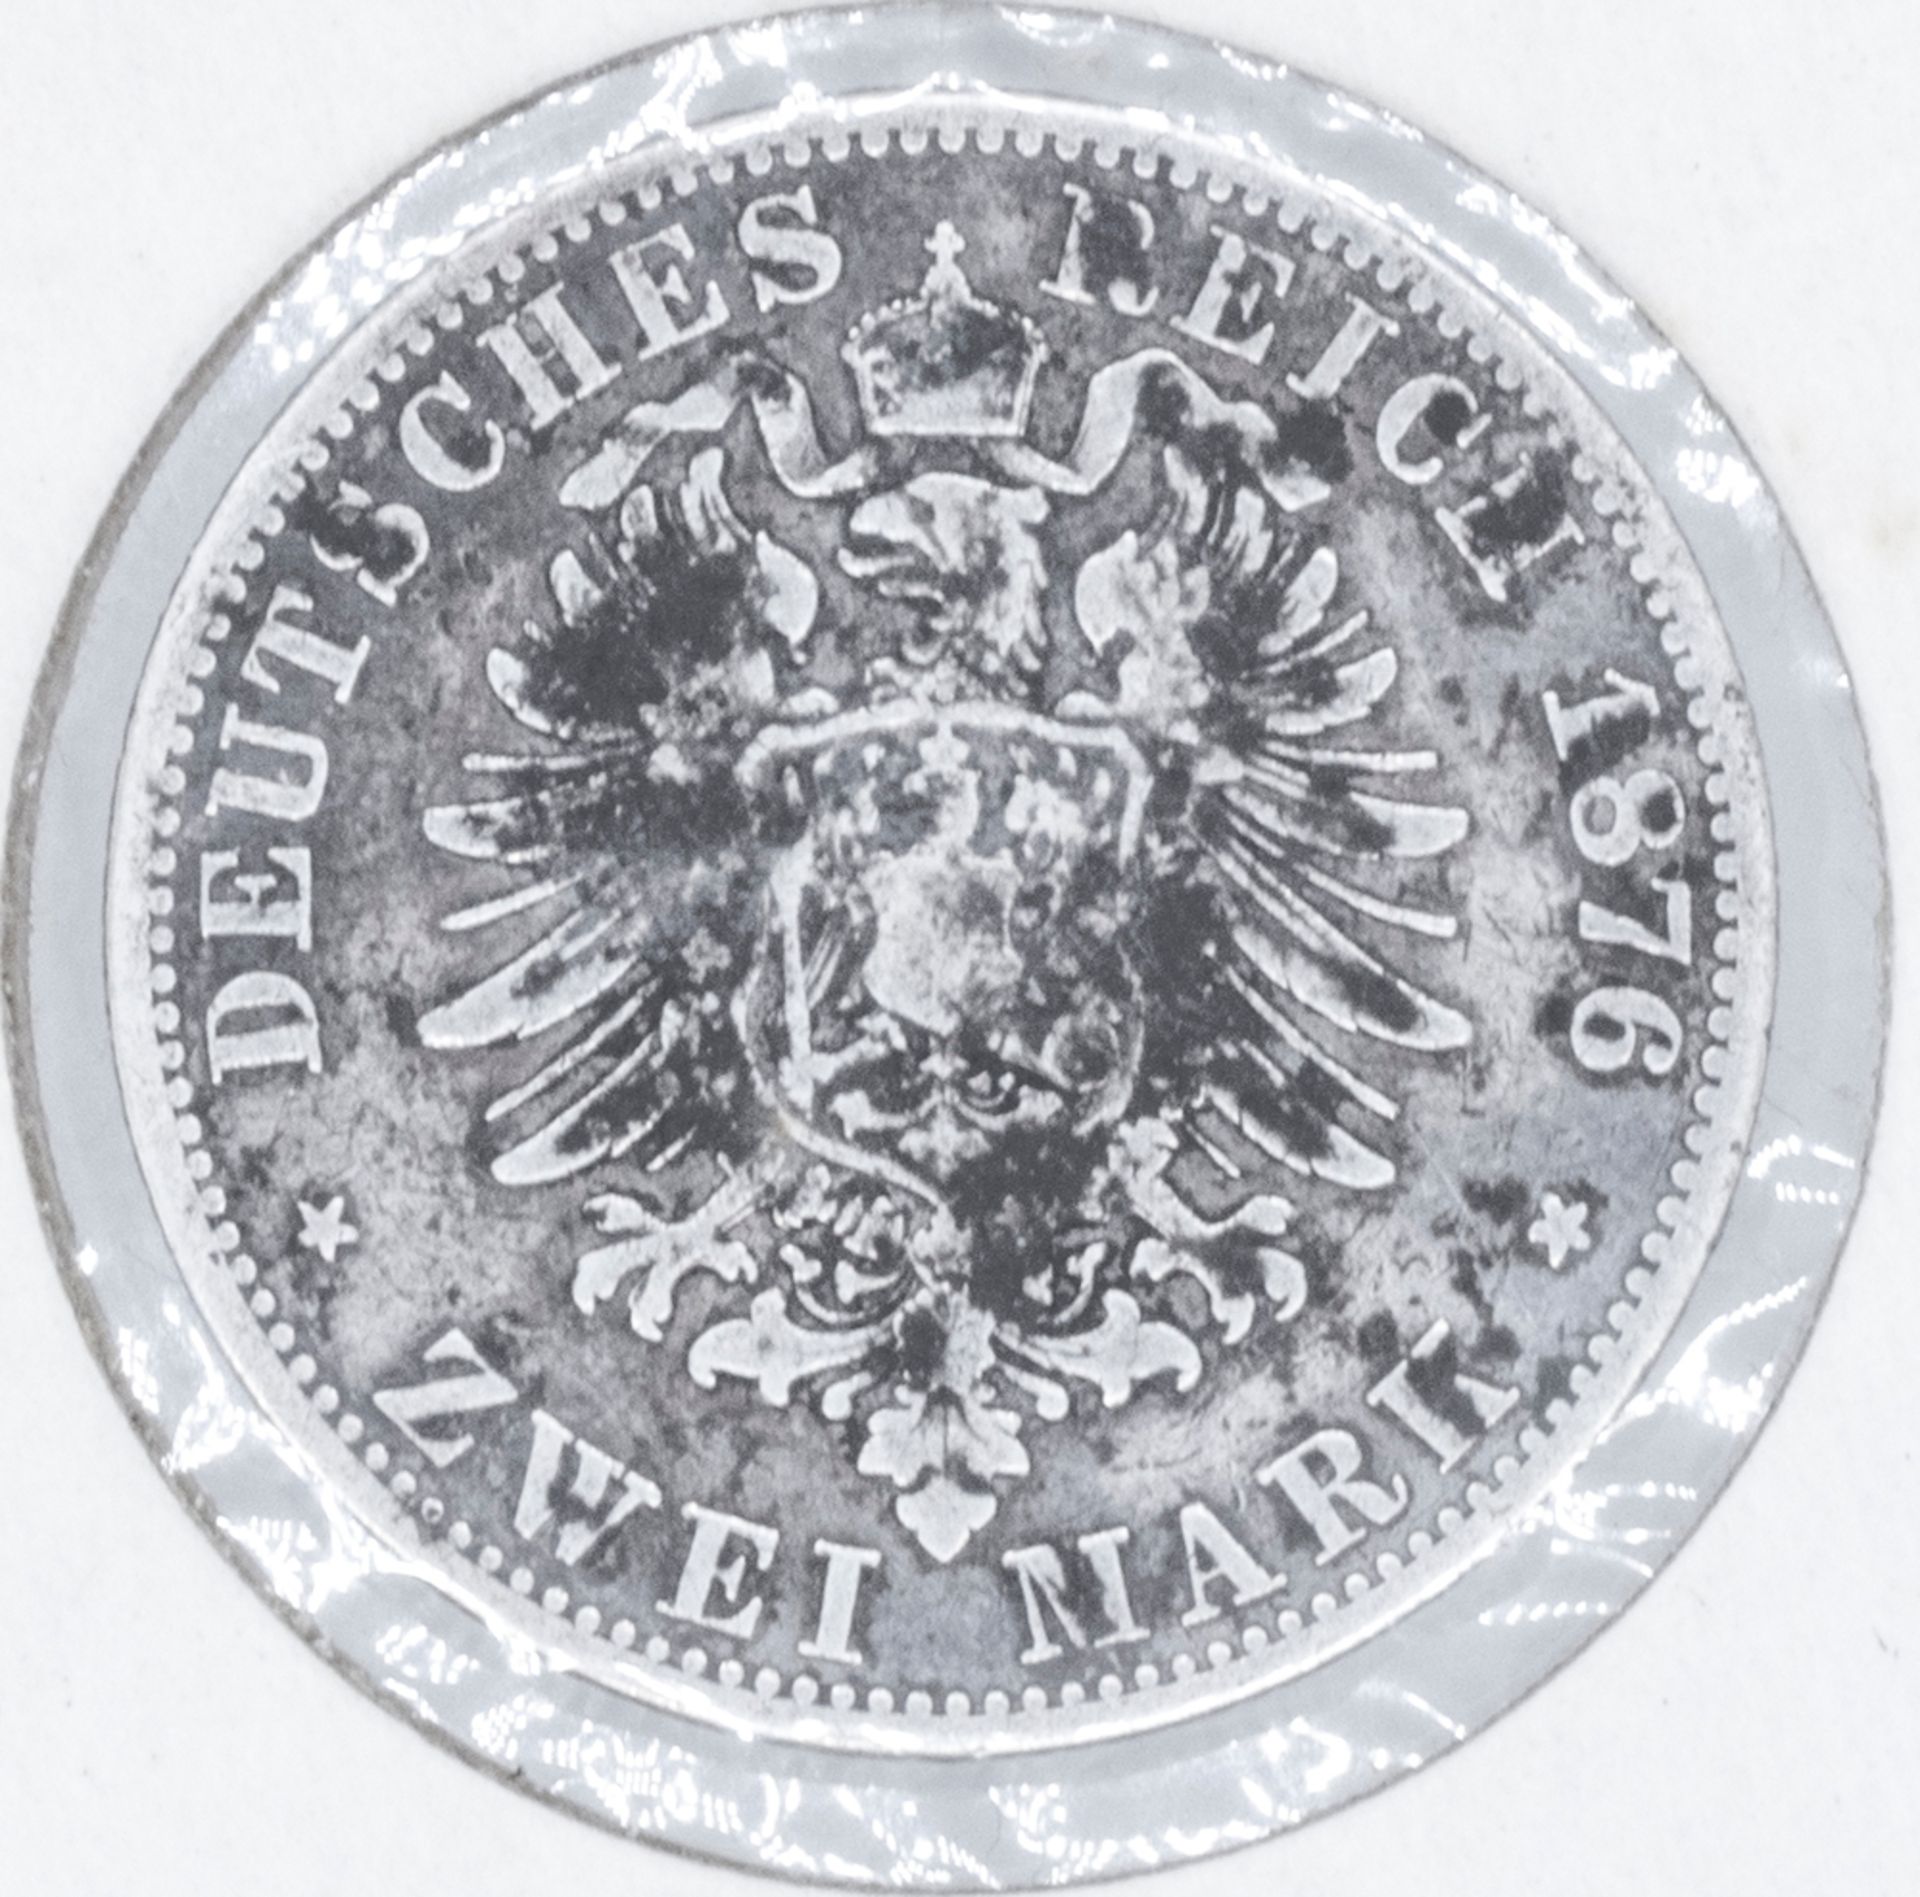 Deutsches Kaiserreich Preußen 1876 B, 2.- Mark - Silbermünze "Wilhelm". Erhaltung: ss. - Image 2 of 2